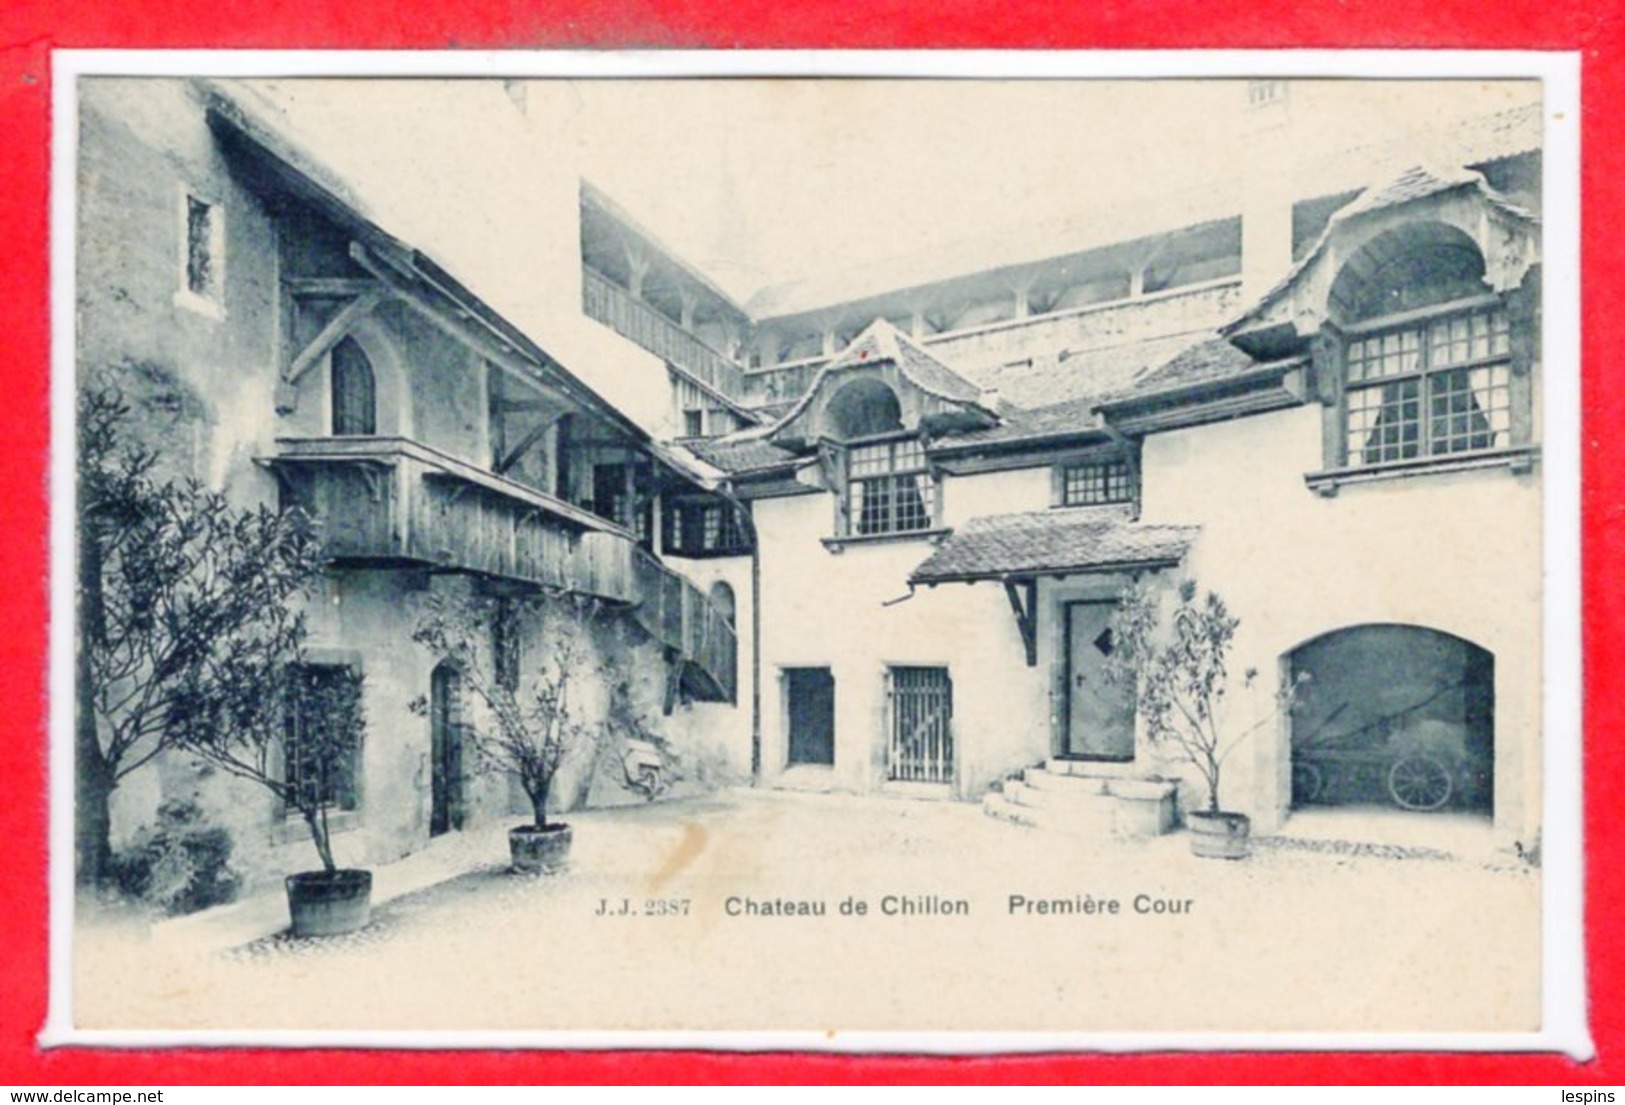 SUISSE -- VEYTAUX -- Chateau De Chillon - Premier Cour - Premier